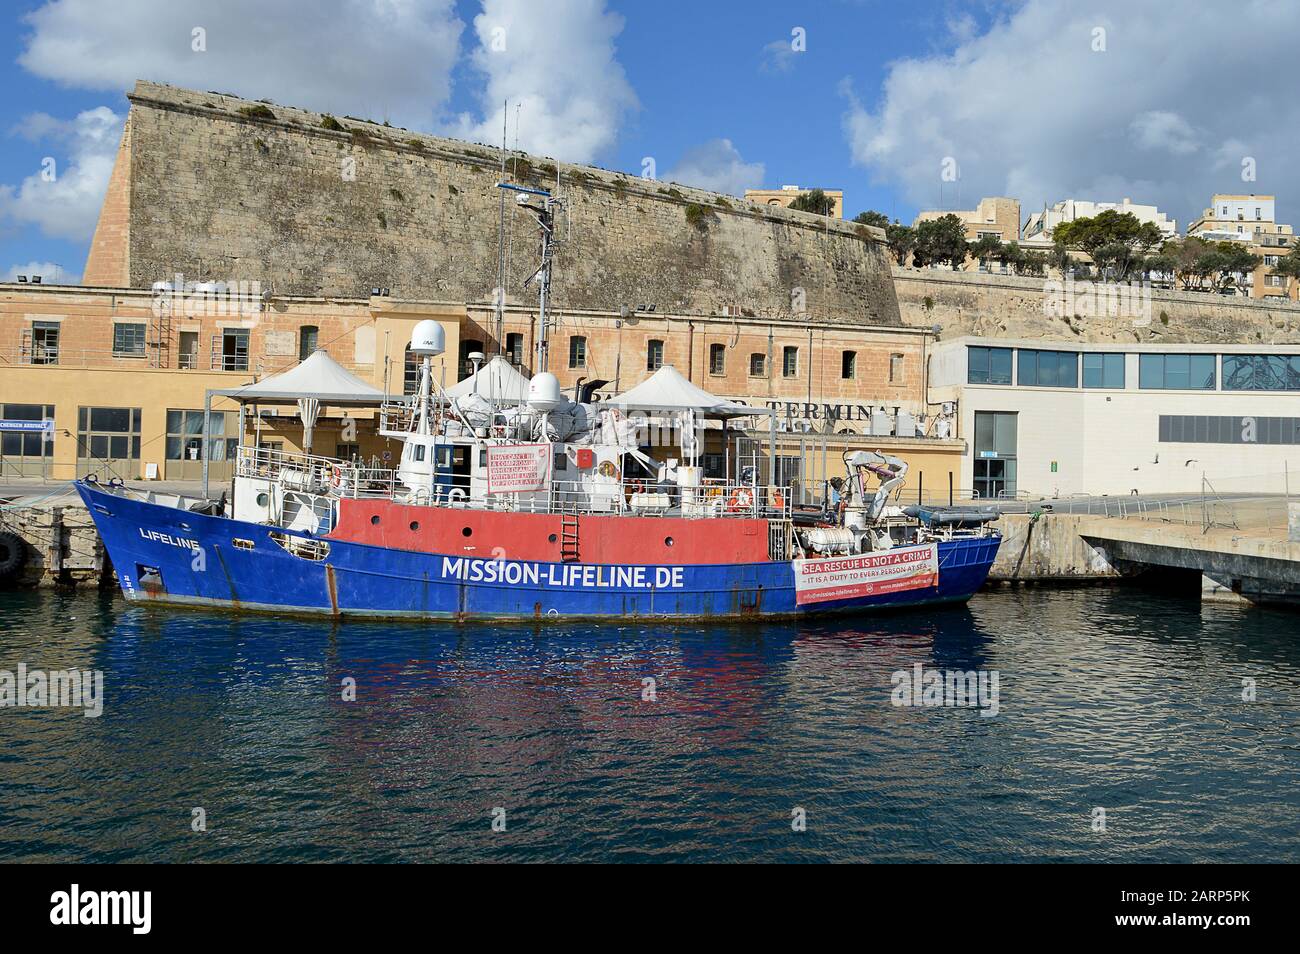 Valletta, MALTA - 11. JANUAR 2020: Ein ehemaliges Fischereiforschungsschiff, das in Aberdeen gebaut wurde und in schottischen Gewässern operiert, wurde die Clupea an die deutsche NGO Sea-Watch verkauft und zu einem Rettungsschiff für Migranten im Mittelmeer umgebaut. 2016 wurde es an Mission Lifeline verkauft und in Lifeline umbenannt. Nachdem Italien mit 239 Migranten an Bord die Einreise verweigert worden war, wurde es nach Malta zugelassen, wo es wegen unlauteren Besitzes und Flaggenrückführung mit dem Kapitän Claus-Peter Reisch festgenommen und gegen Kaution freigelassen wurde. Stockfoto